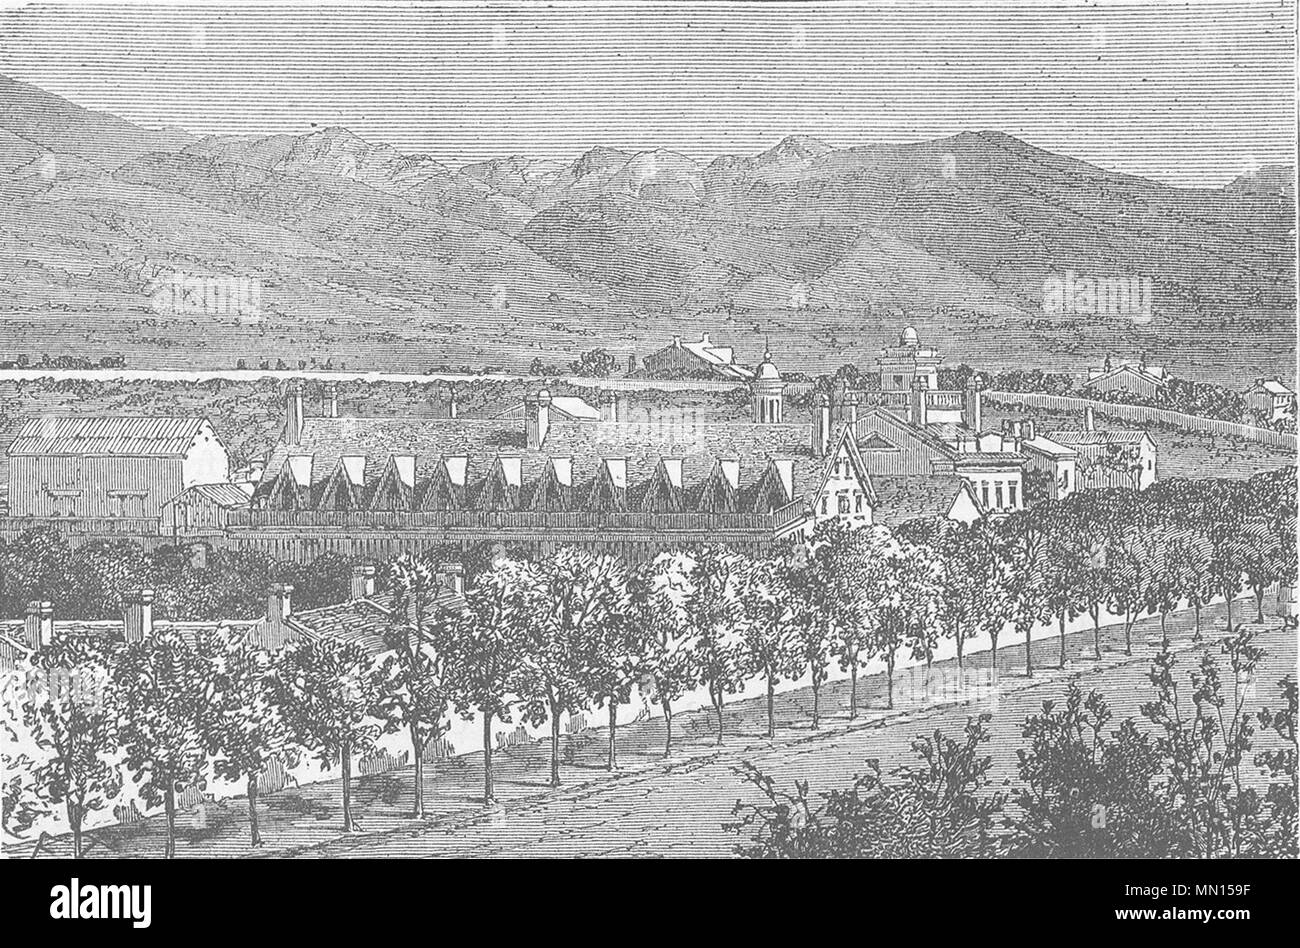 UTAH. Casa di Brigham Young, Salt Lake City c1880 antica immagine di stampa Foto Stock